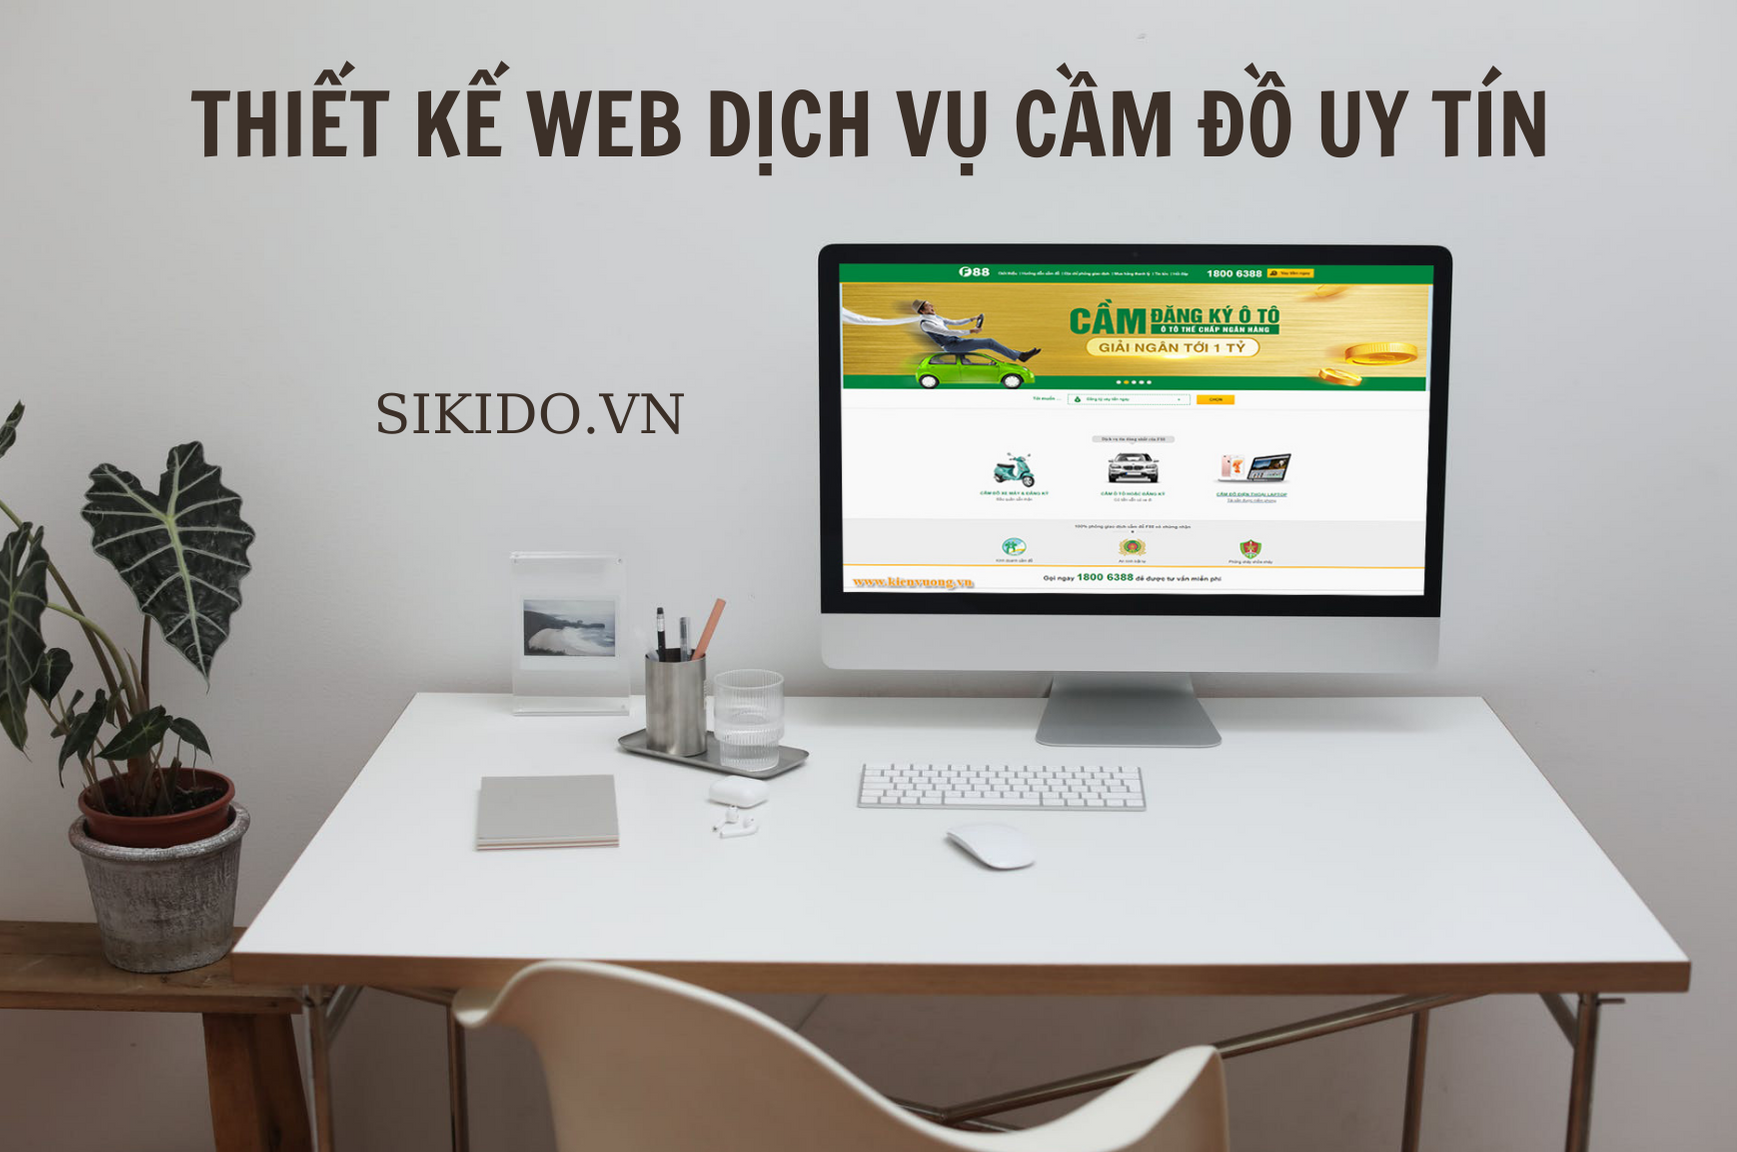 Thiết kế website dịch vụ cầm đồ uy tín tại SIKIDO